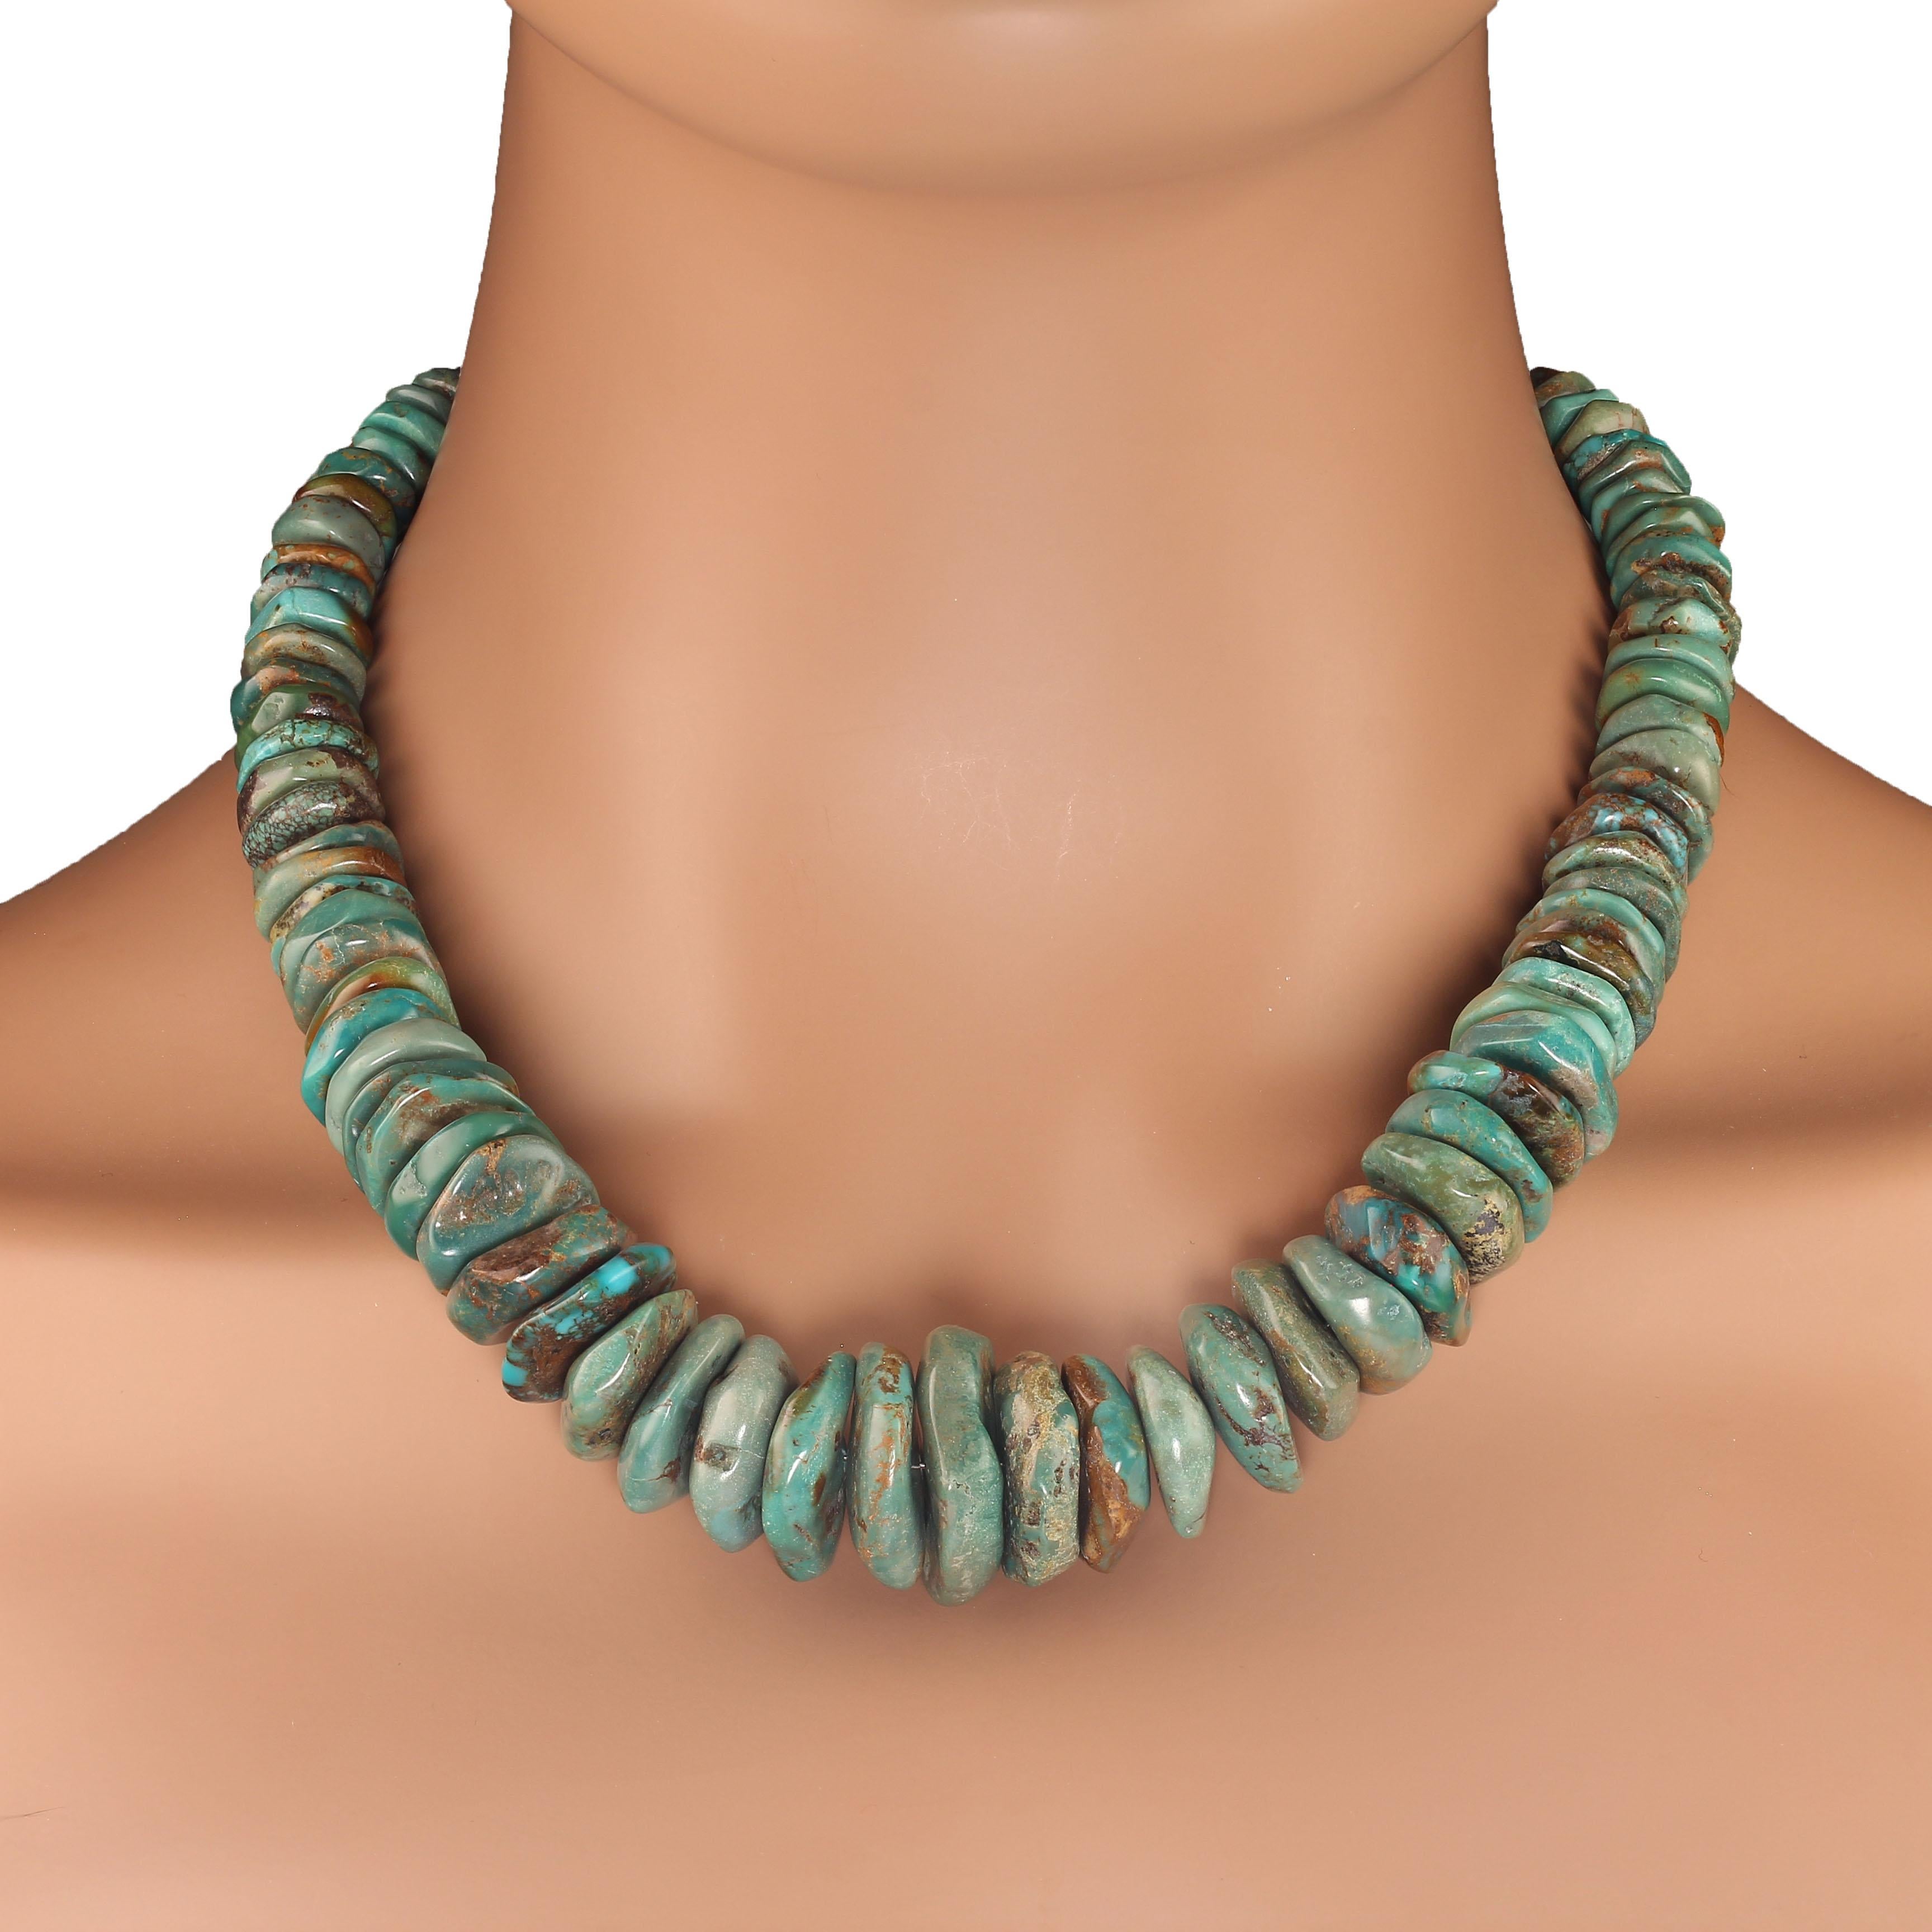 20 Zoll abgestufte grüne chinesische Türkis Halskette.  Diese elegante Halskette ist in den Größen 8-22 mm erhältlich. Die Scheiben sind rau und gesprenkelt, was ihren Charme ausmacht. Sie wird mit einem versilberten 2-Ring-Knebelverschluss